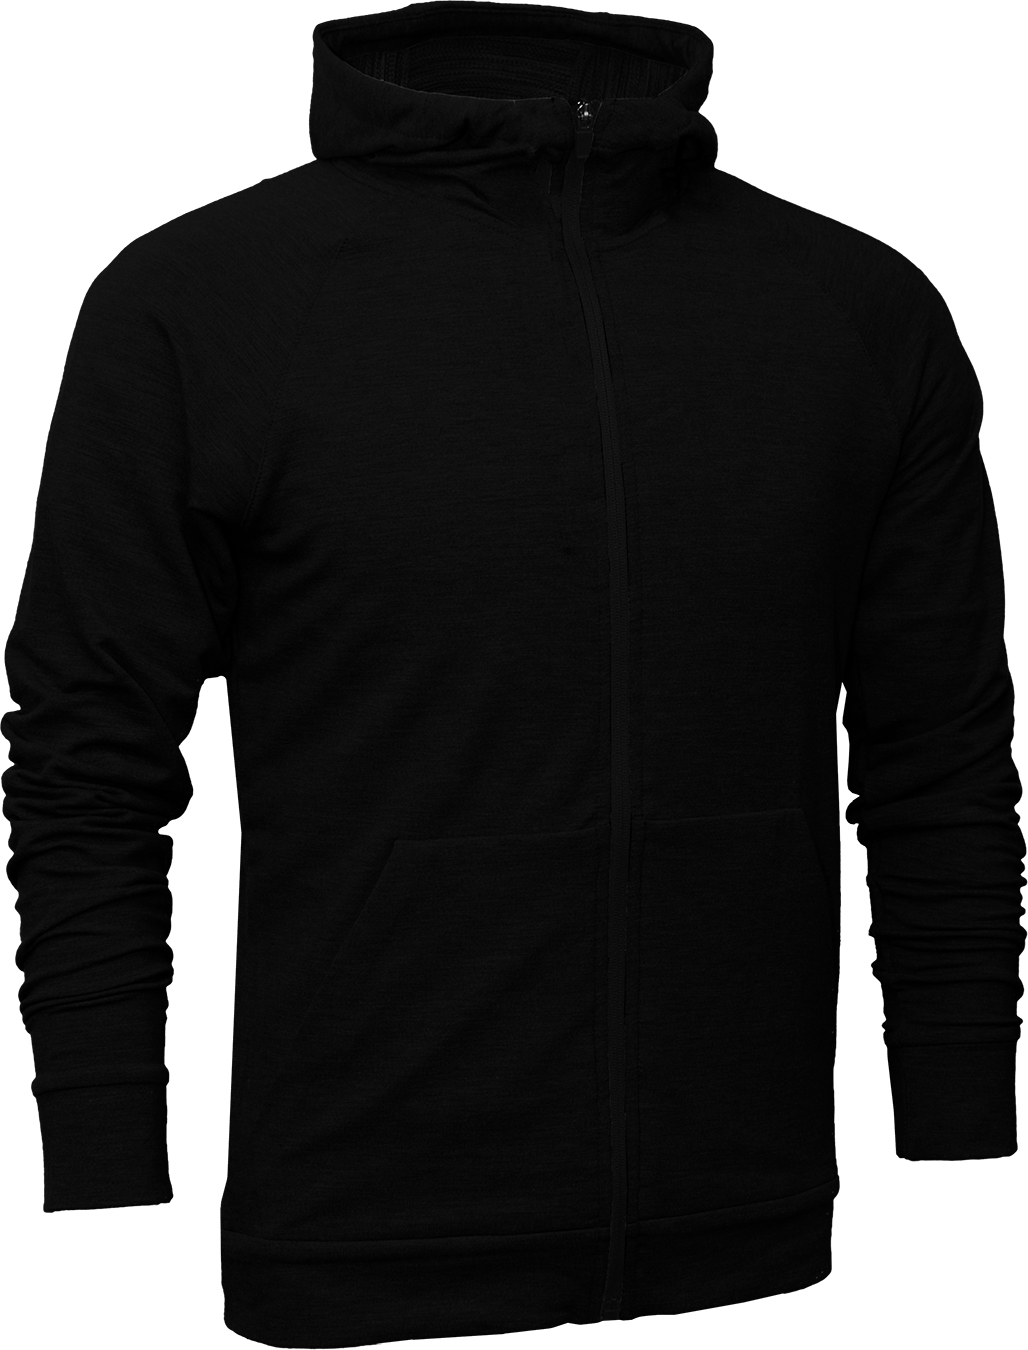 BAW Athletic Wear F360Y - Youth Tri-Blend Full Zip Jacket